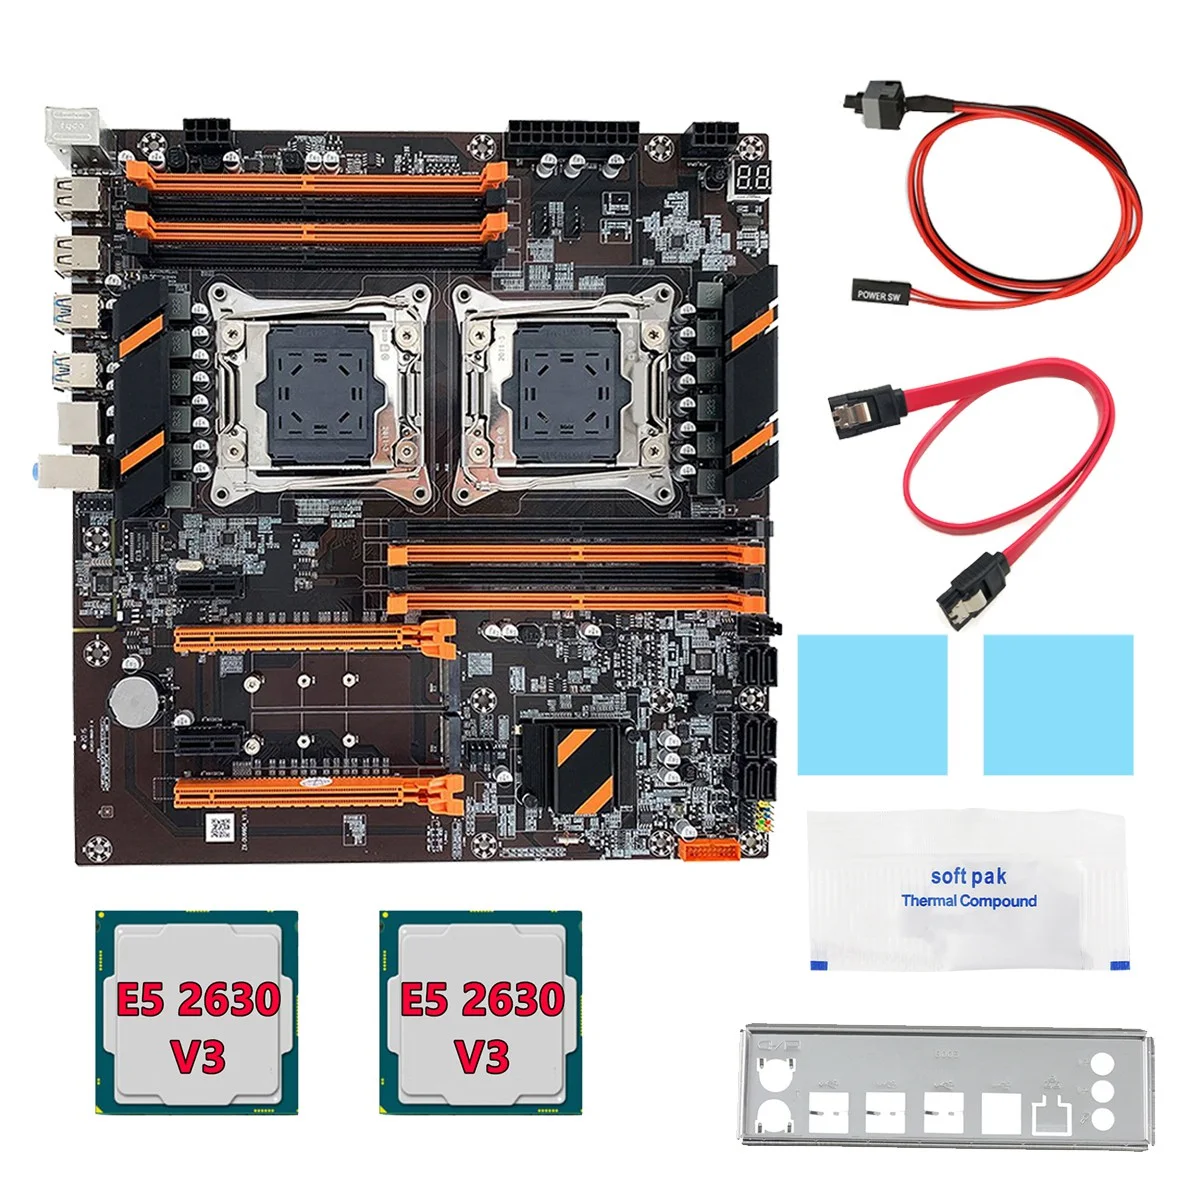 

X99 Dual CPU Motherboard+2XE5 2630 V3 CPU+SATA Cable+Baffle+Thermal Grease LGA 2011 8XDDR4 Slot Support 2011 V3 CPU